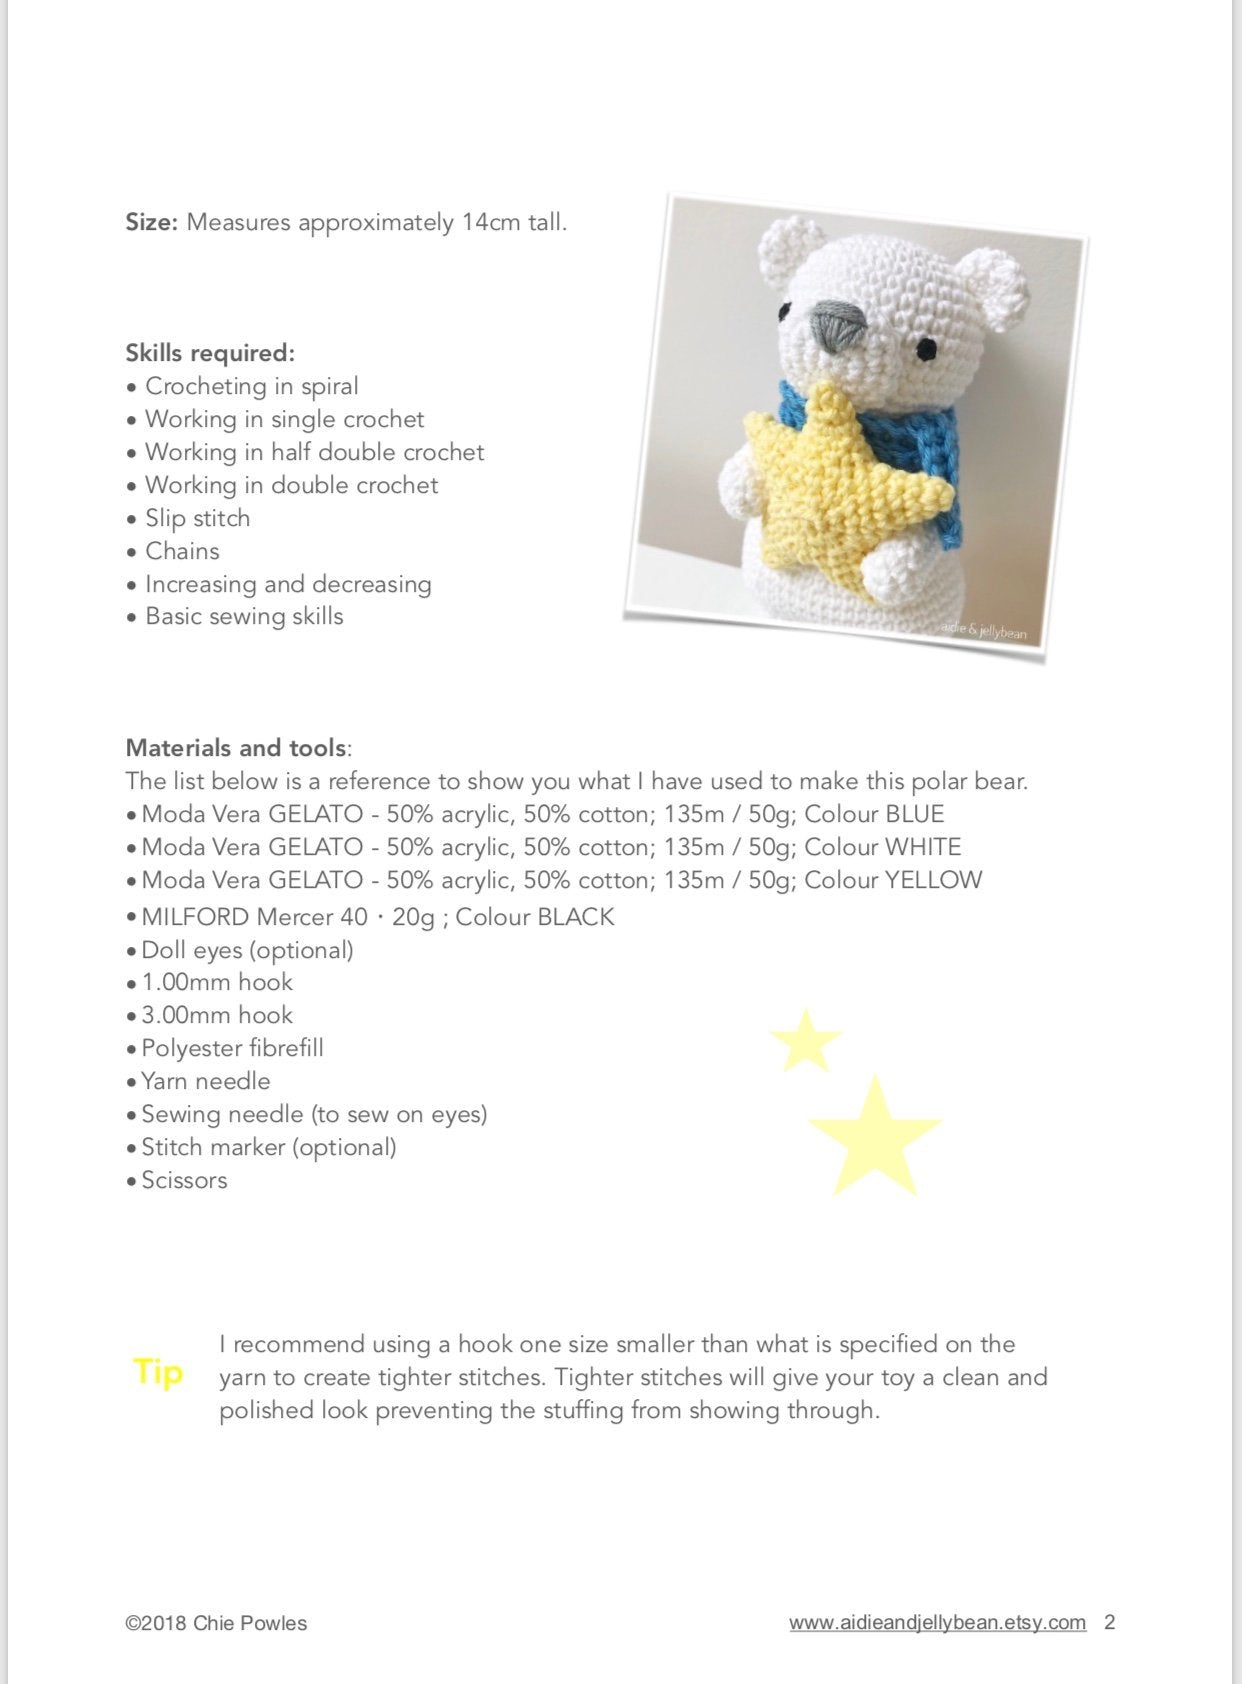 Crochet Eyes Pattern Doll Eyes english PDF, Photo Tutorial